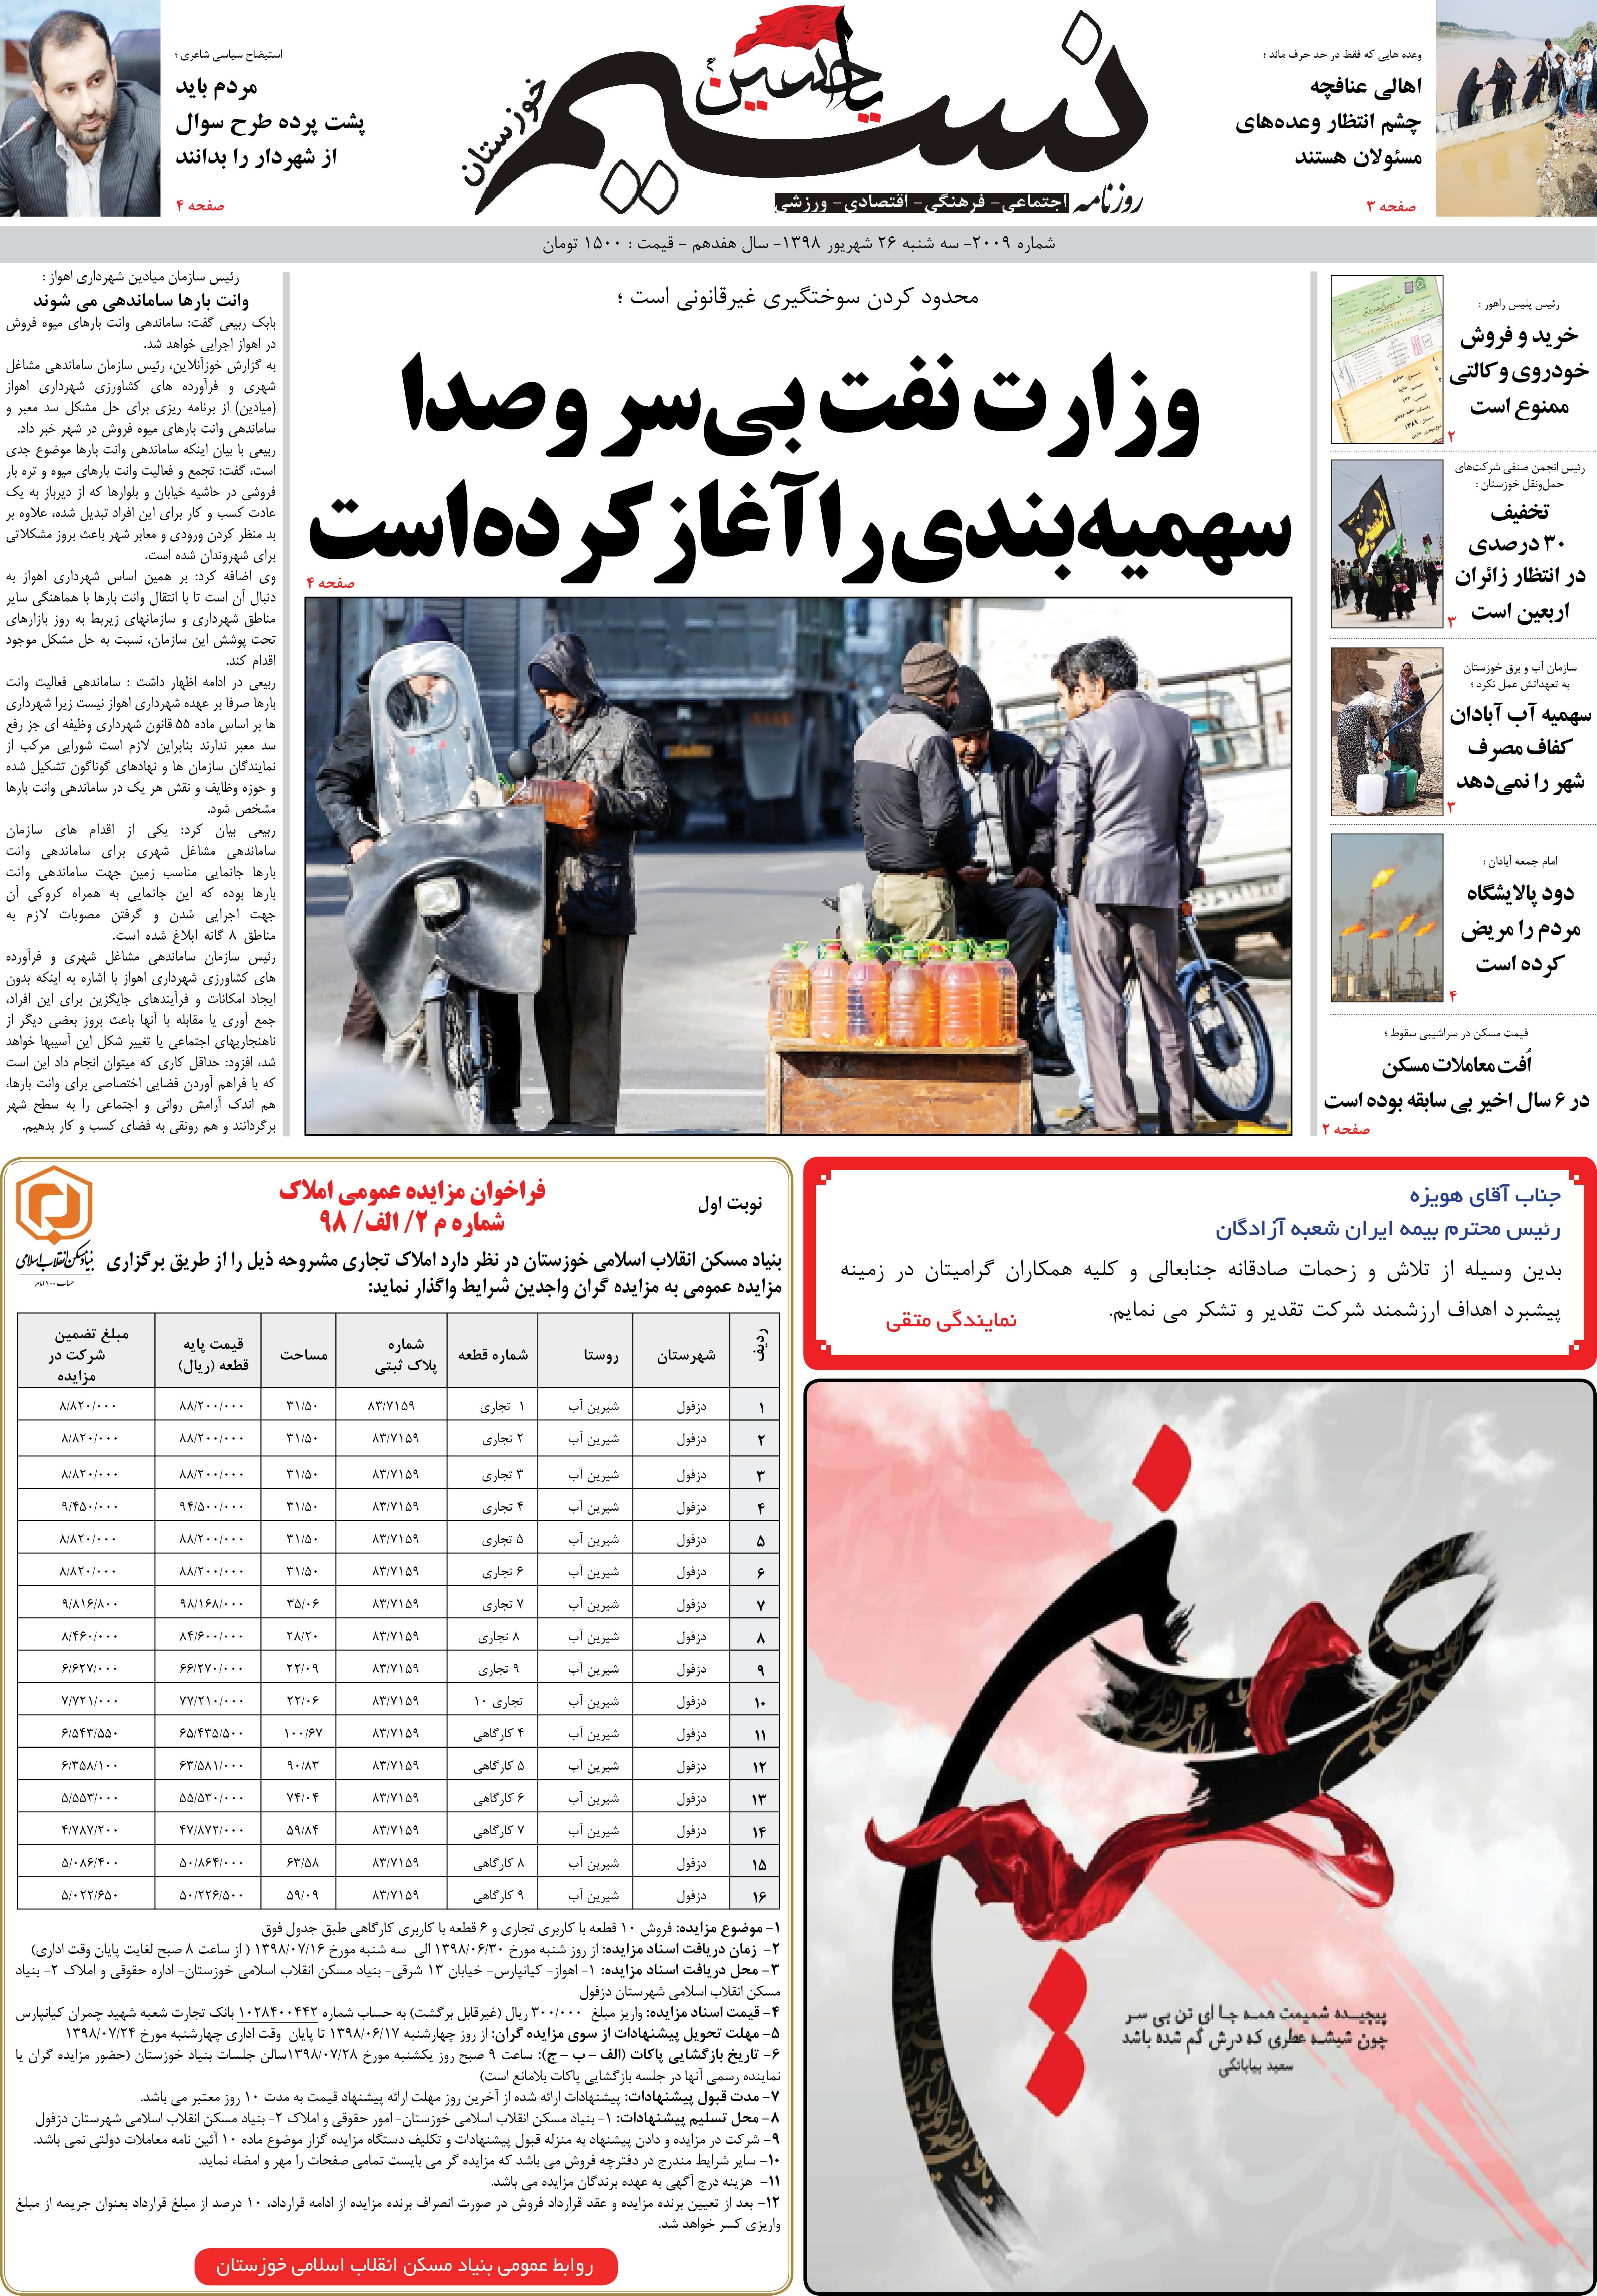 صفحه اصلی روزنامه نسیم شماره 2009 